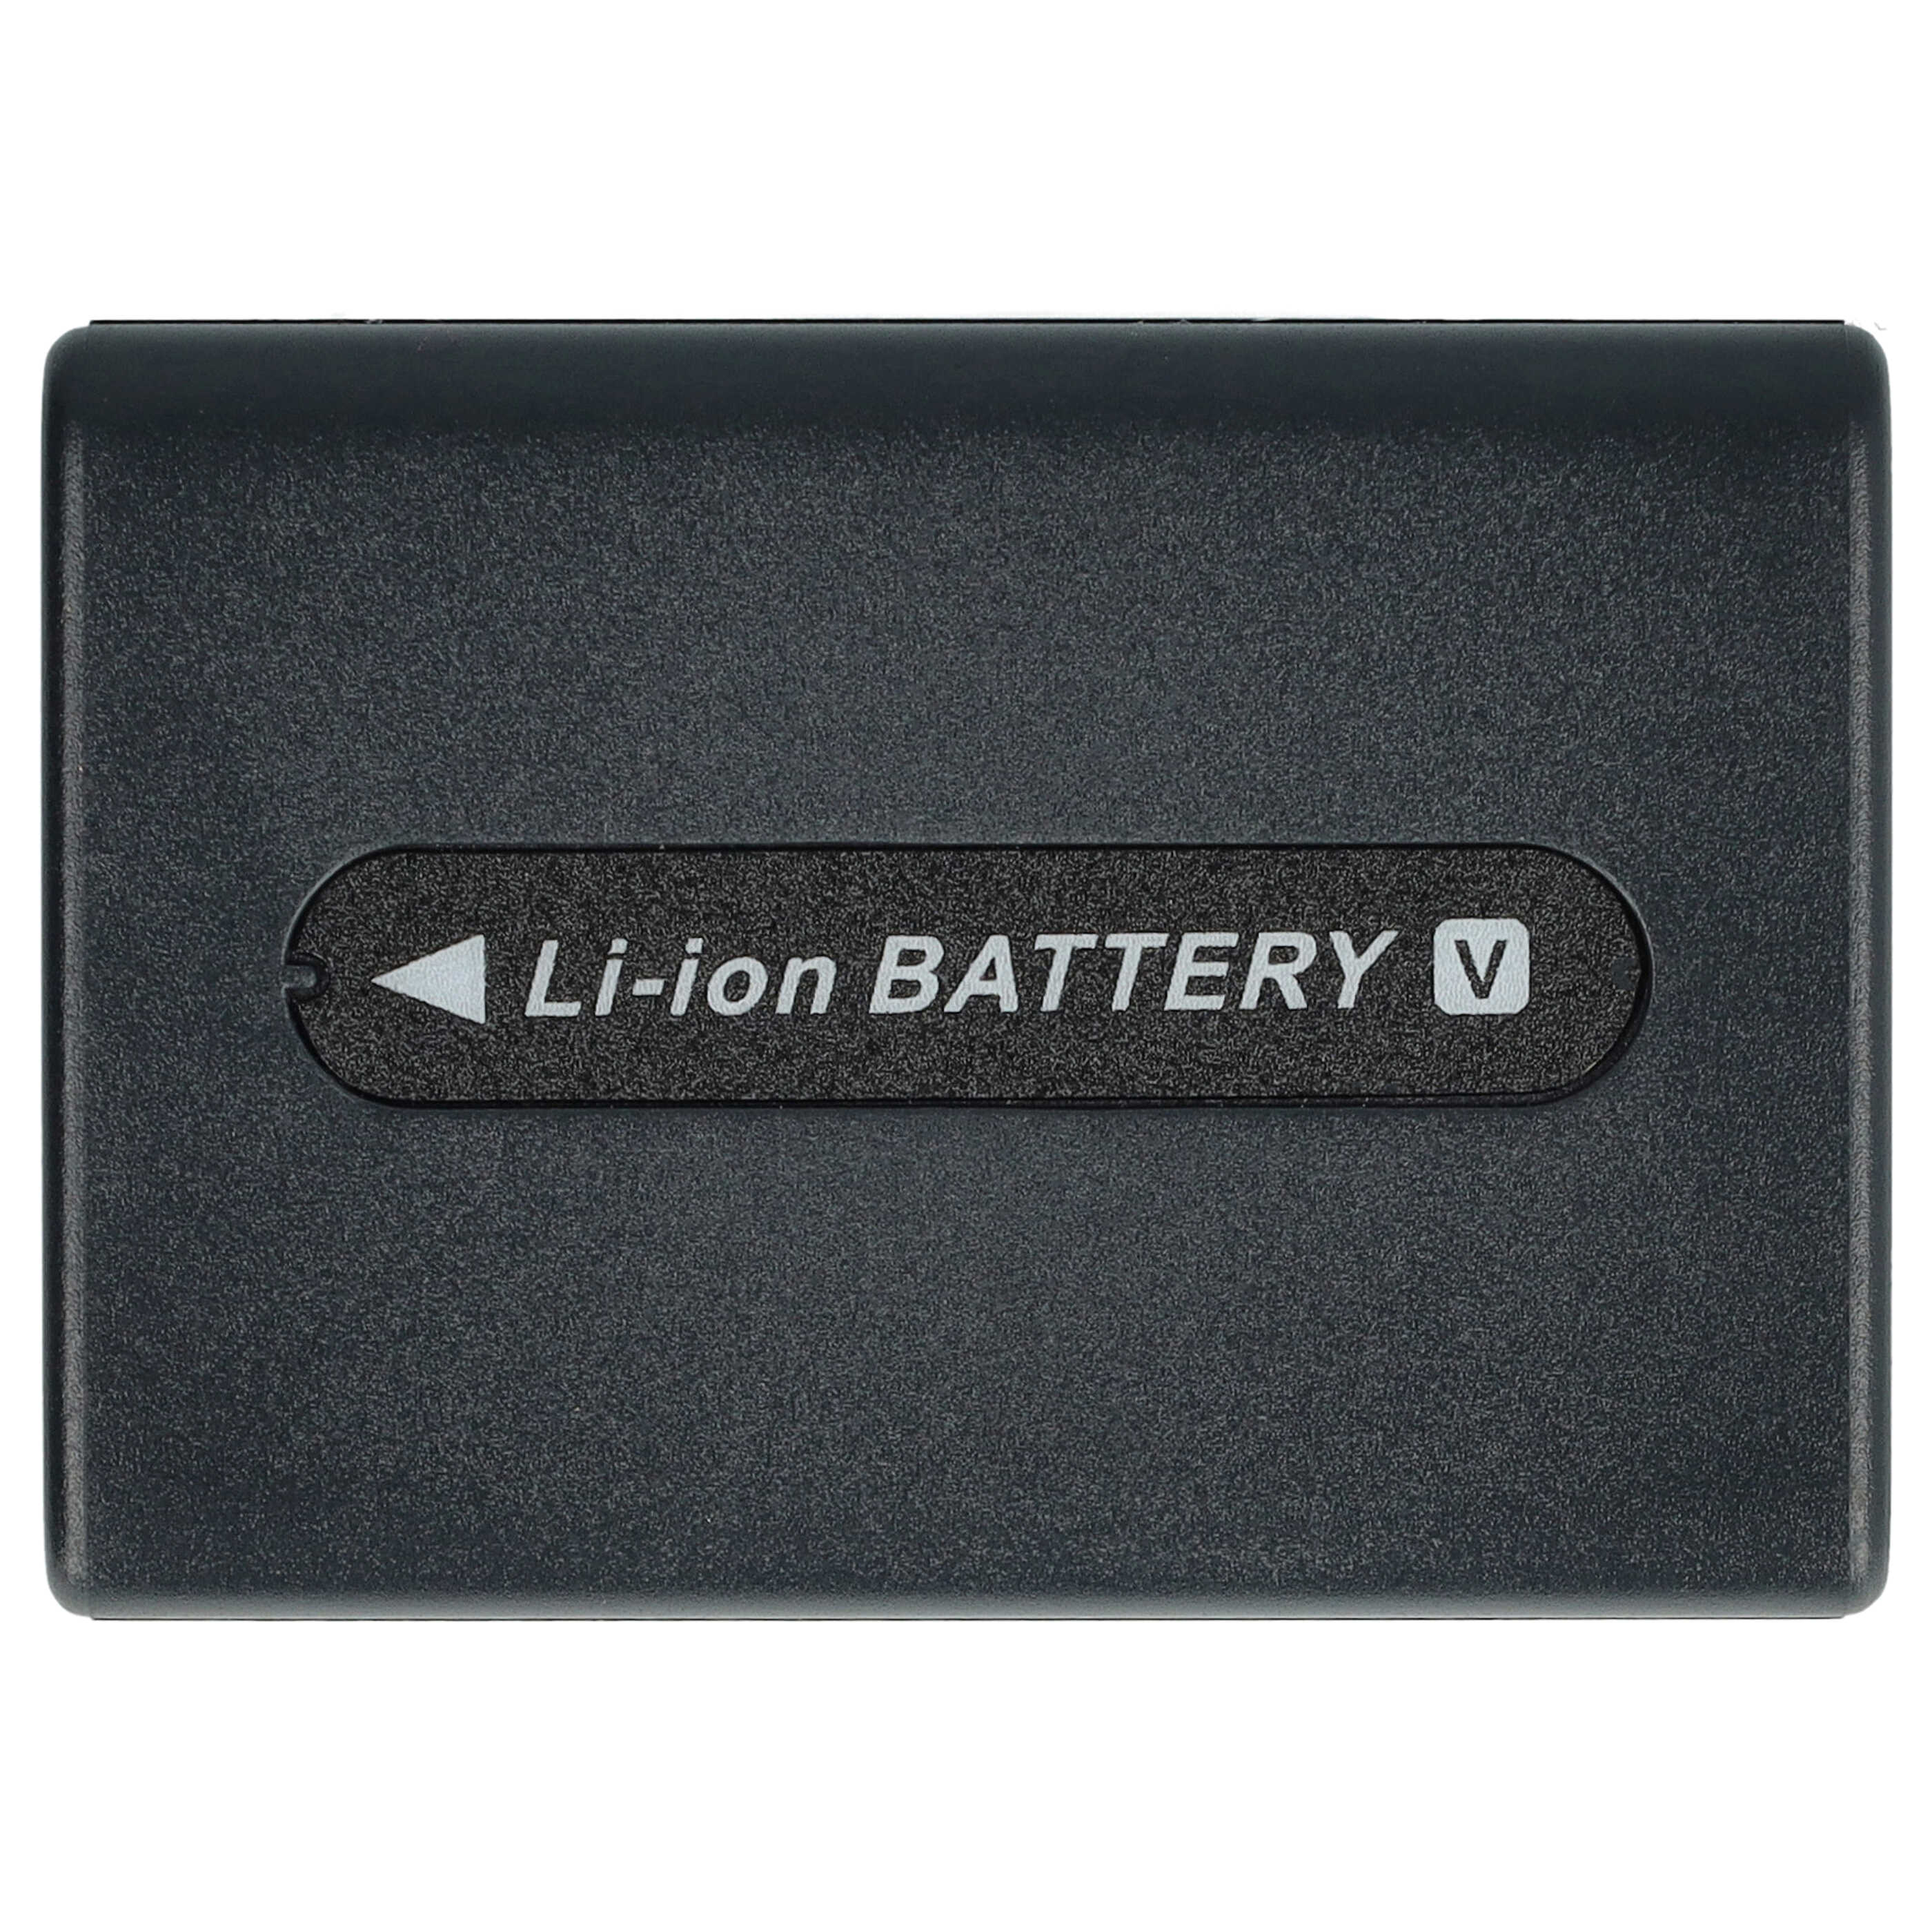 Batterie remplace Sony NP-FV100 pour caméscope - 2200mAh 7,2V Li-ion avec puce